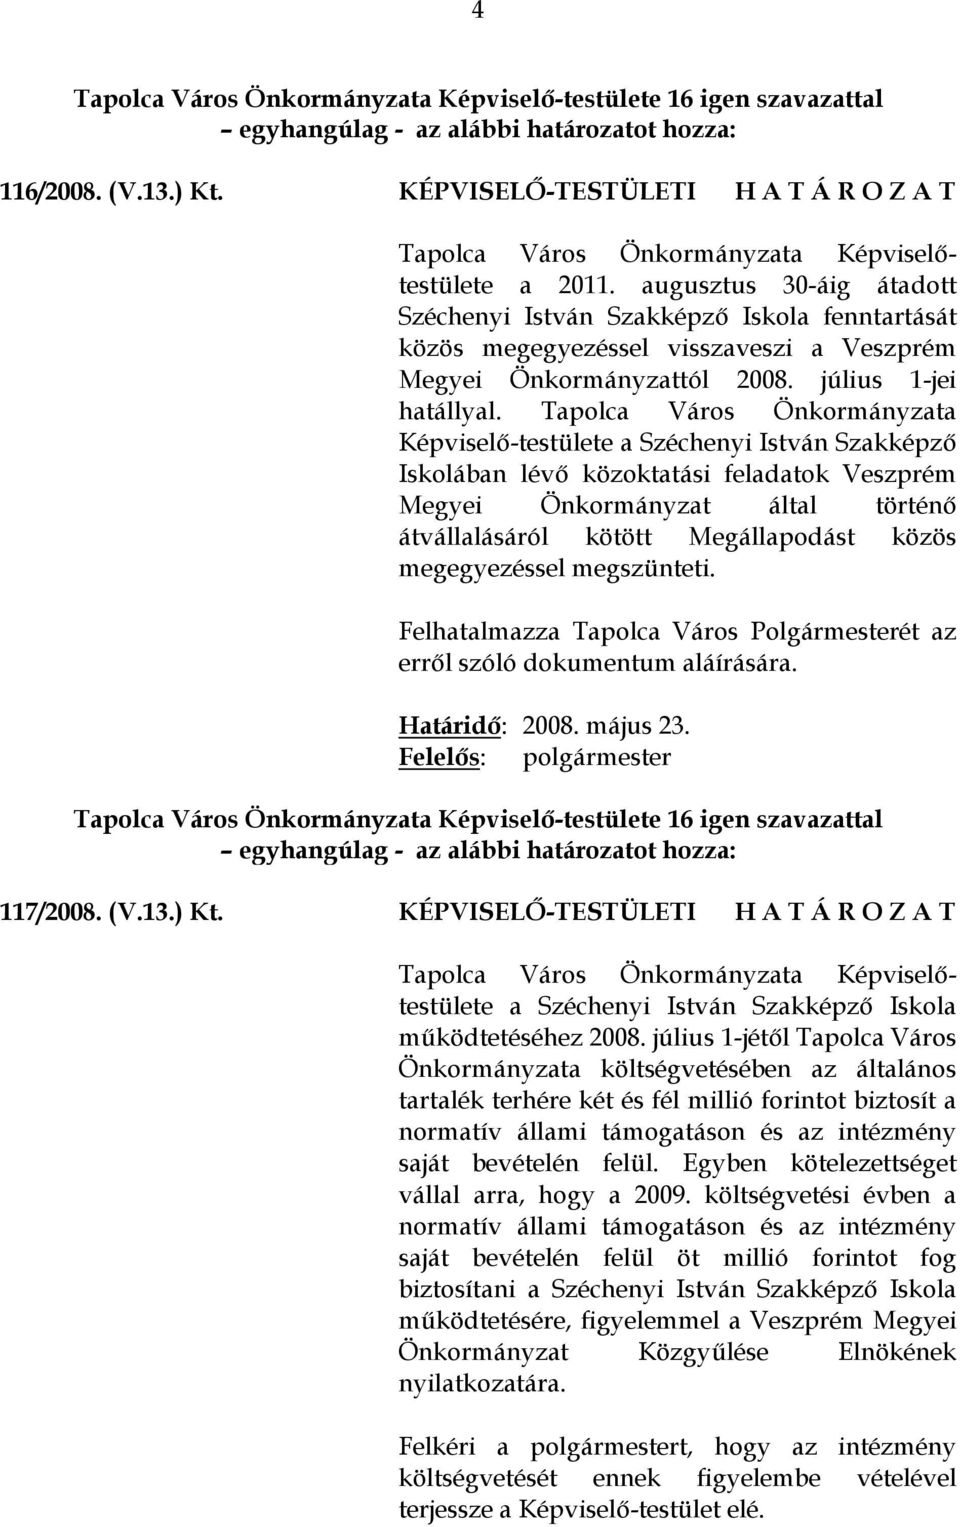 Tapolca Város Önkormányzata Képviselő-testülete a Széchenyi István Szakképző Iskolában lévő közoktatási feladatok Veszprém Megyei Önkormányzat által történő átvállalásáról kötött Megállapodást közös